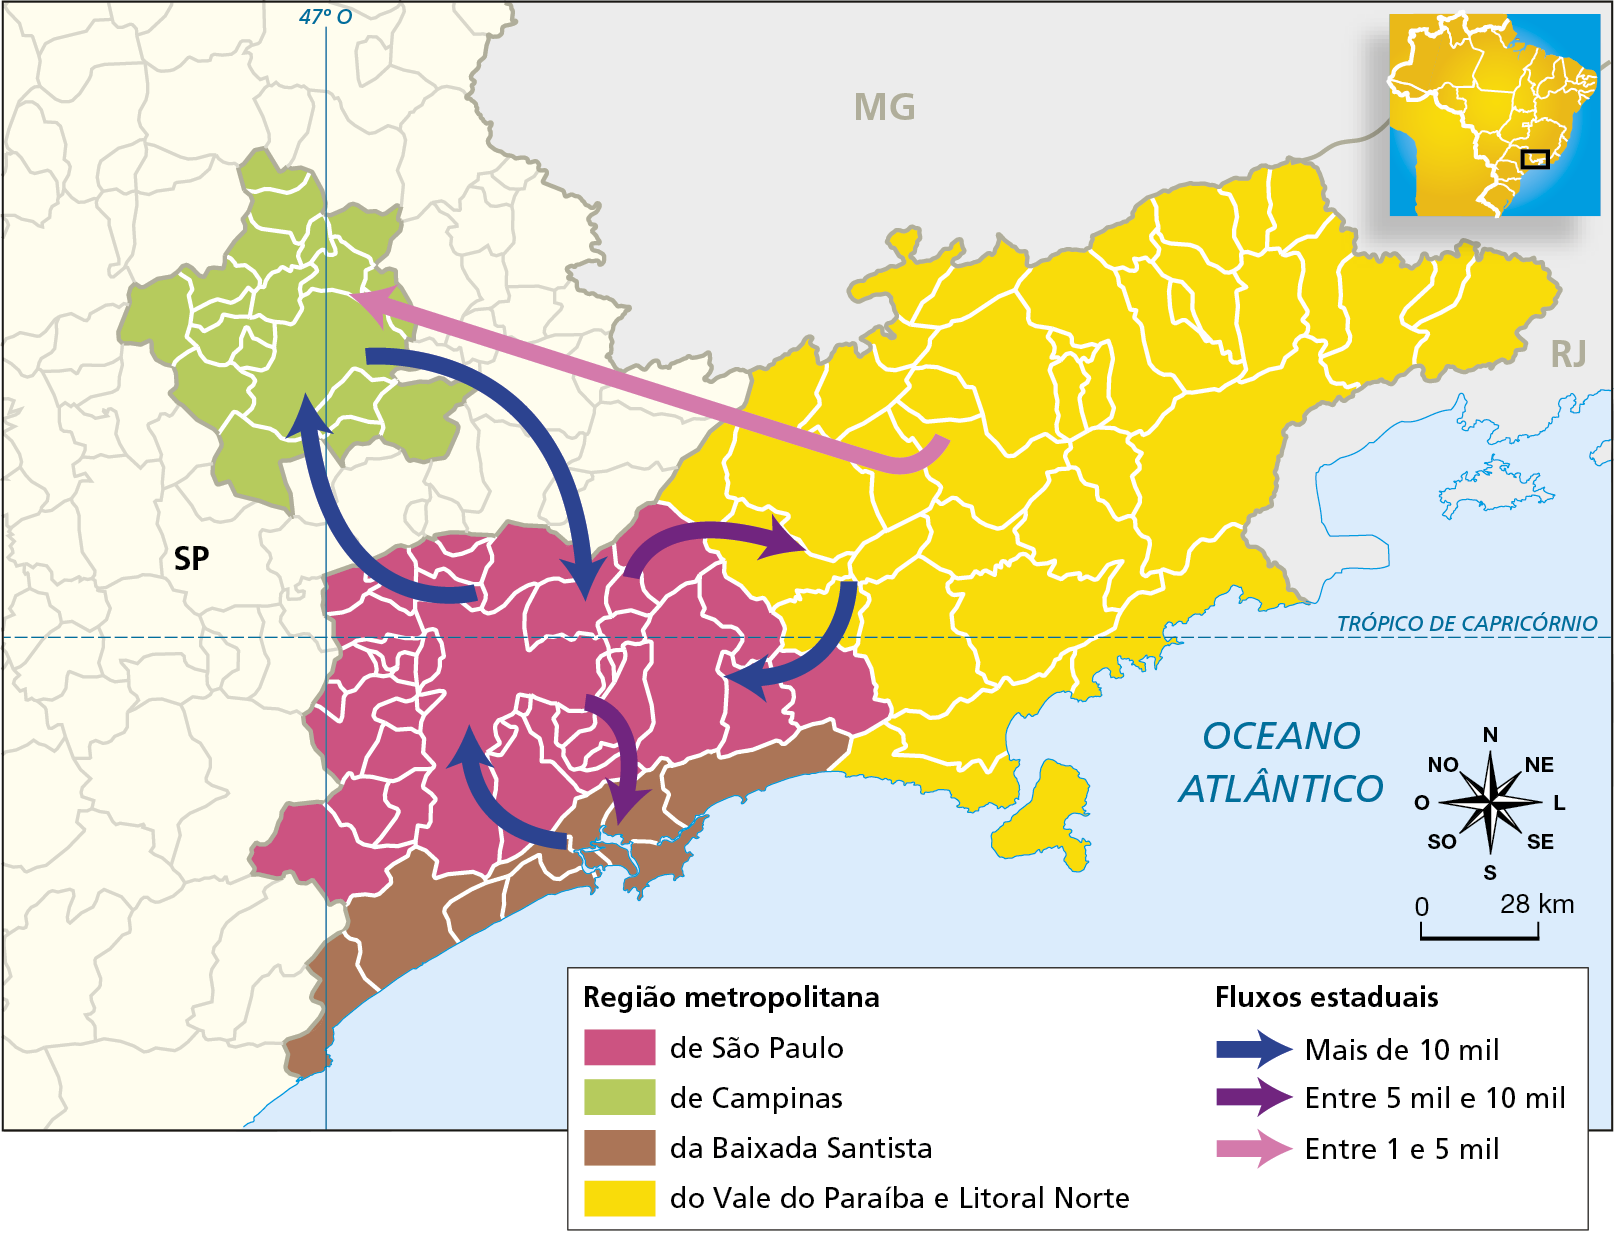 Mapa. SÃO PAULO: PRINCIPAIS FLUXOS PENDULARES ENTRE AS REGIÕES METROPOLITANAS OFICIAIS (2010). Mapa da porção leste do estado de São Paulo com sua divisão municipal. A leste, o estado faz divisa com o Rio de Janeiro, ao norte com Minas Gerais e a sudeste está o Oceano Atlântico. Região metropolitana de São Paulo, na cor rosa, engloba municípios no centro da porção leste. Região metropolitana de Campinas, na cor verde-claro, engloba alguns municípios a noroeste da região metropolitana de São Paulo. Região Metropolitana da Baixada Santista: ao sul da região metropolitana de São Paulo, no litoral. Região Metropolitana do Vale do Paraíba e Litoral Norte, na cor amarelo: engloba todos os municípios a leste da Região Metropolitana de São Paulo. Fluxos estaduais Da região metropolitana de São Paulo em direção à região metropolitana de Campinas, fluxo pendular de mais de 10 mil pessoas. Da região metropolitana de São Paulo em direção à região metropolitana da Baixada Santista, fluxo pendular entre 5 mil e 10 mil. Da região metropolitana de São Paulo em direção à região metropolitana do Vale do Paraíba e Litoral Norte, fluxo pendular entre 5 mil e 10 mil. Da região metropolitana de Campinas em direção à região metropolitana de São Paulo, fluxo pendular de mais de 10 mil pessoas. Da Região Metropolitana da Baixada Santista para a Região Metropolitana de São Paulo, fluxo pendular entre 5 mil e 10 mil pessoas. Da Região Metropolitana do Vale do Paraíba e Litoral Norte em direção à região metropolitana de São Paulo, mais de 10 mil. Da Região Metropolitana do Vale do Paraíba e Litoral Norte em direção à região metropolitana de Campinas, entre 1 e 5 mil. Abaixo, rosa dos ventos e escala de 0 a 28 quilômetros.